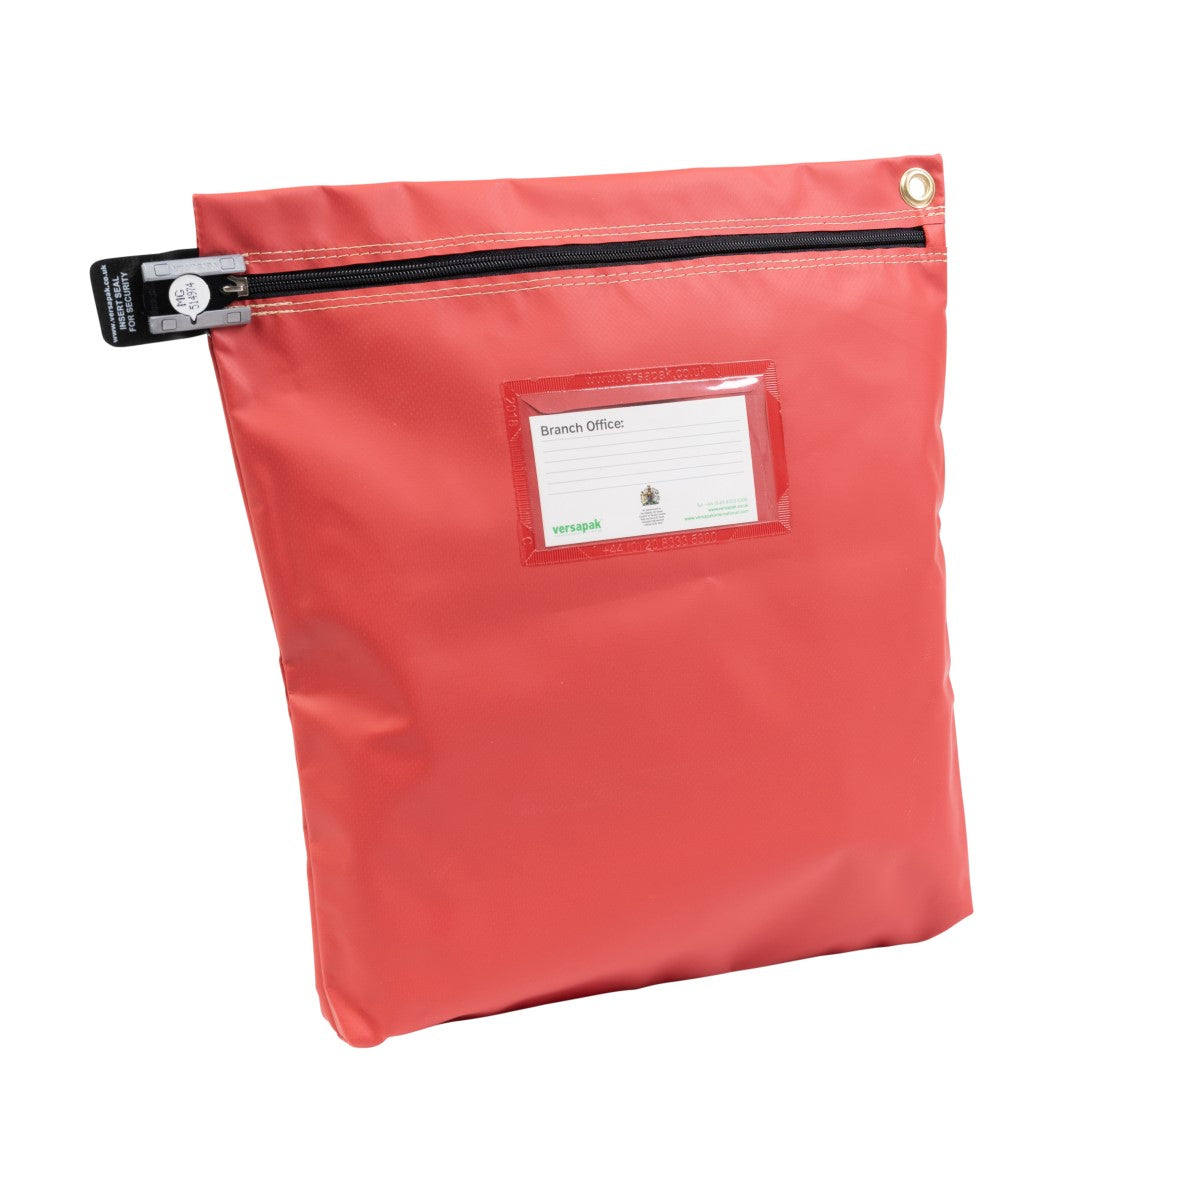 Versapak Secure Reusable Cash Bag CCB4 Button Red